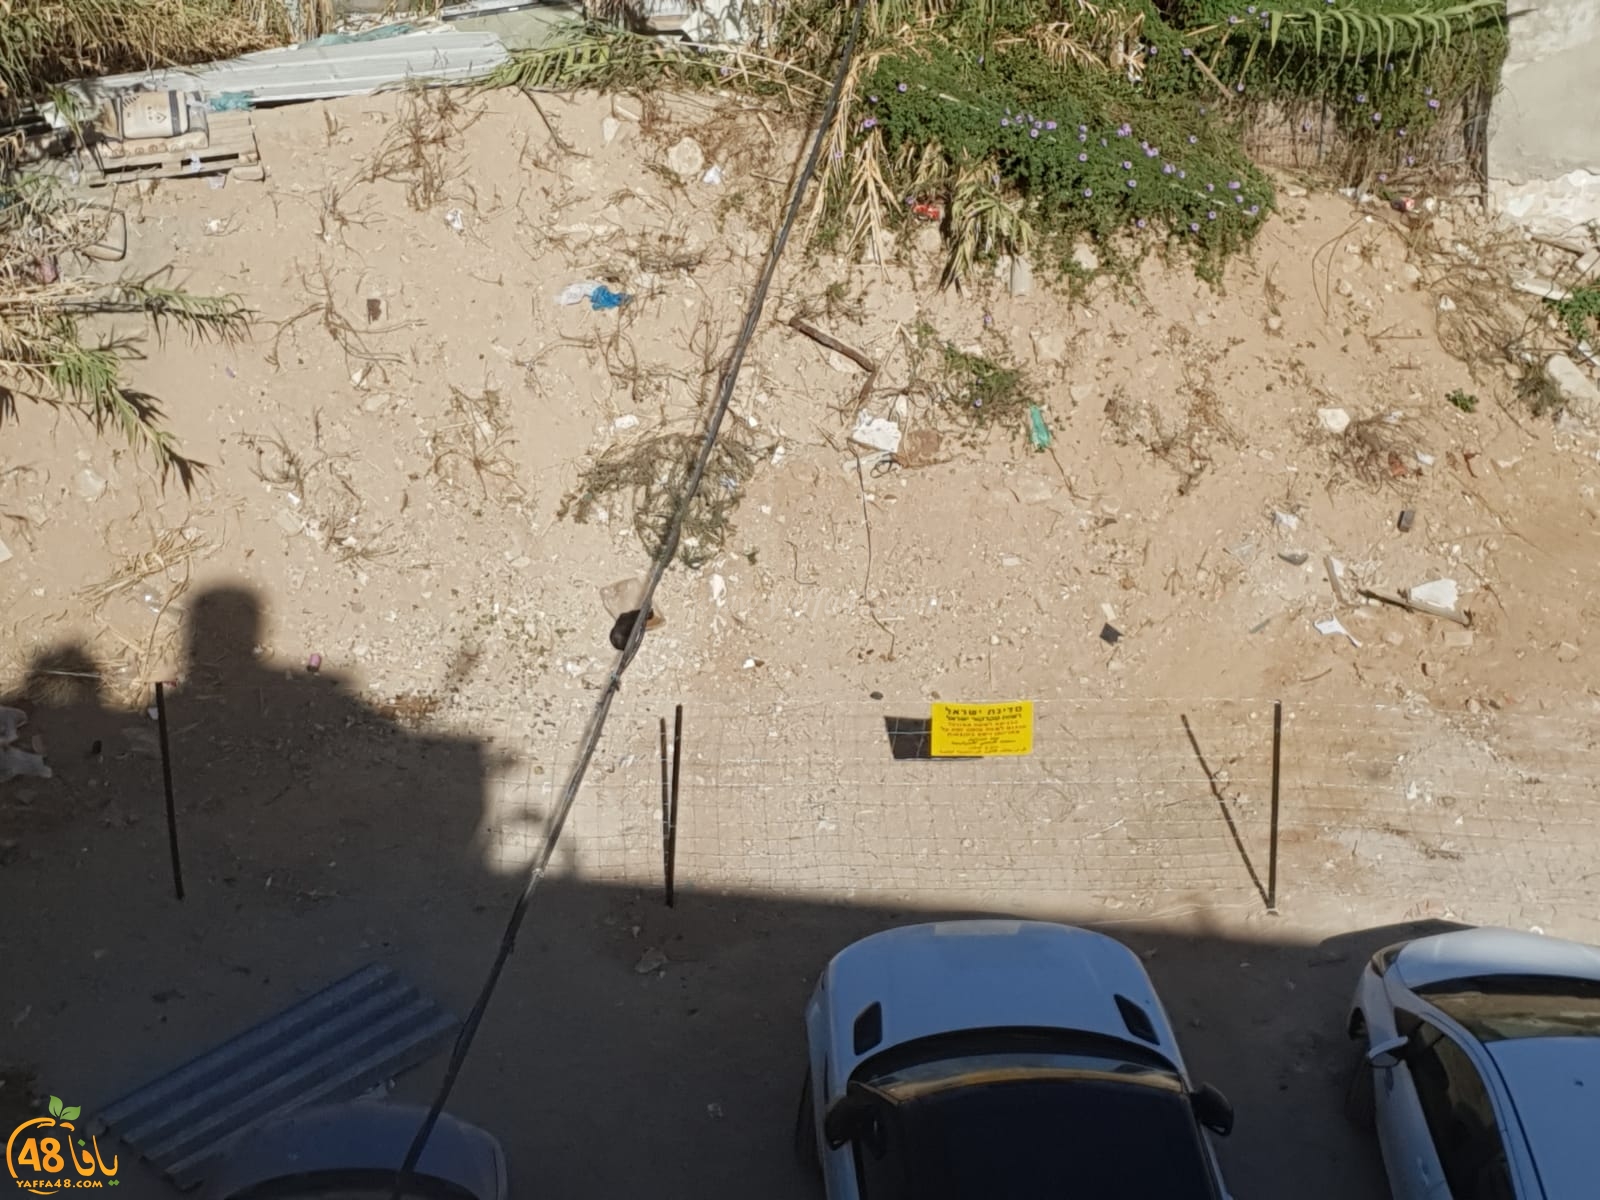   دائرة أراضي اسرائيل تُغلق قطعة أرض بيافا استخدمها السكان لركن سياراتهم 